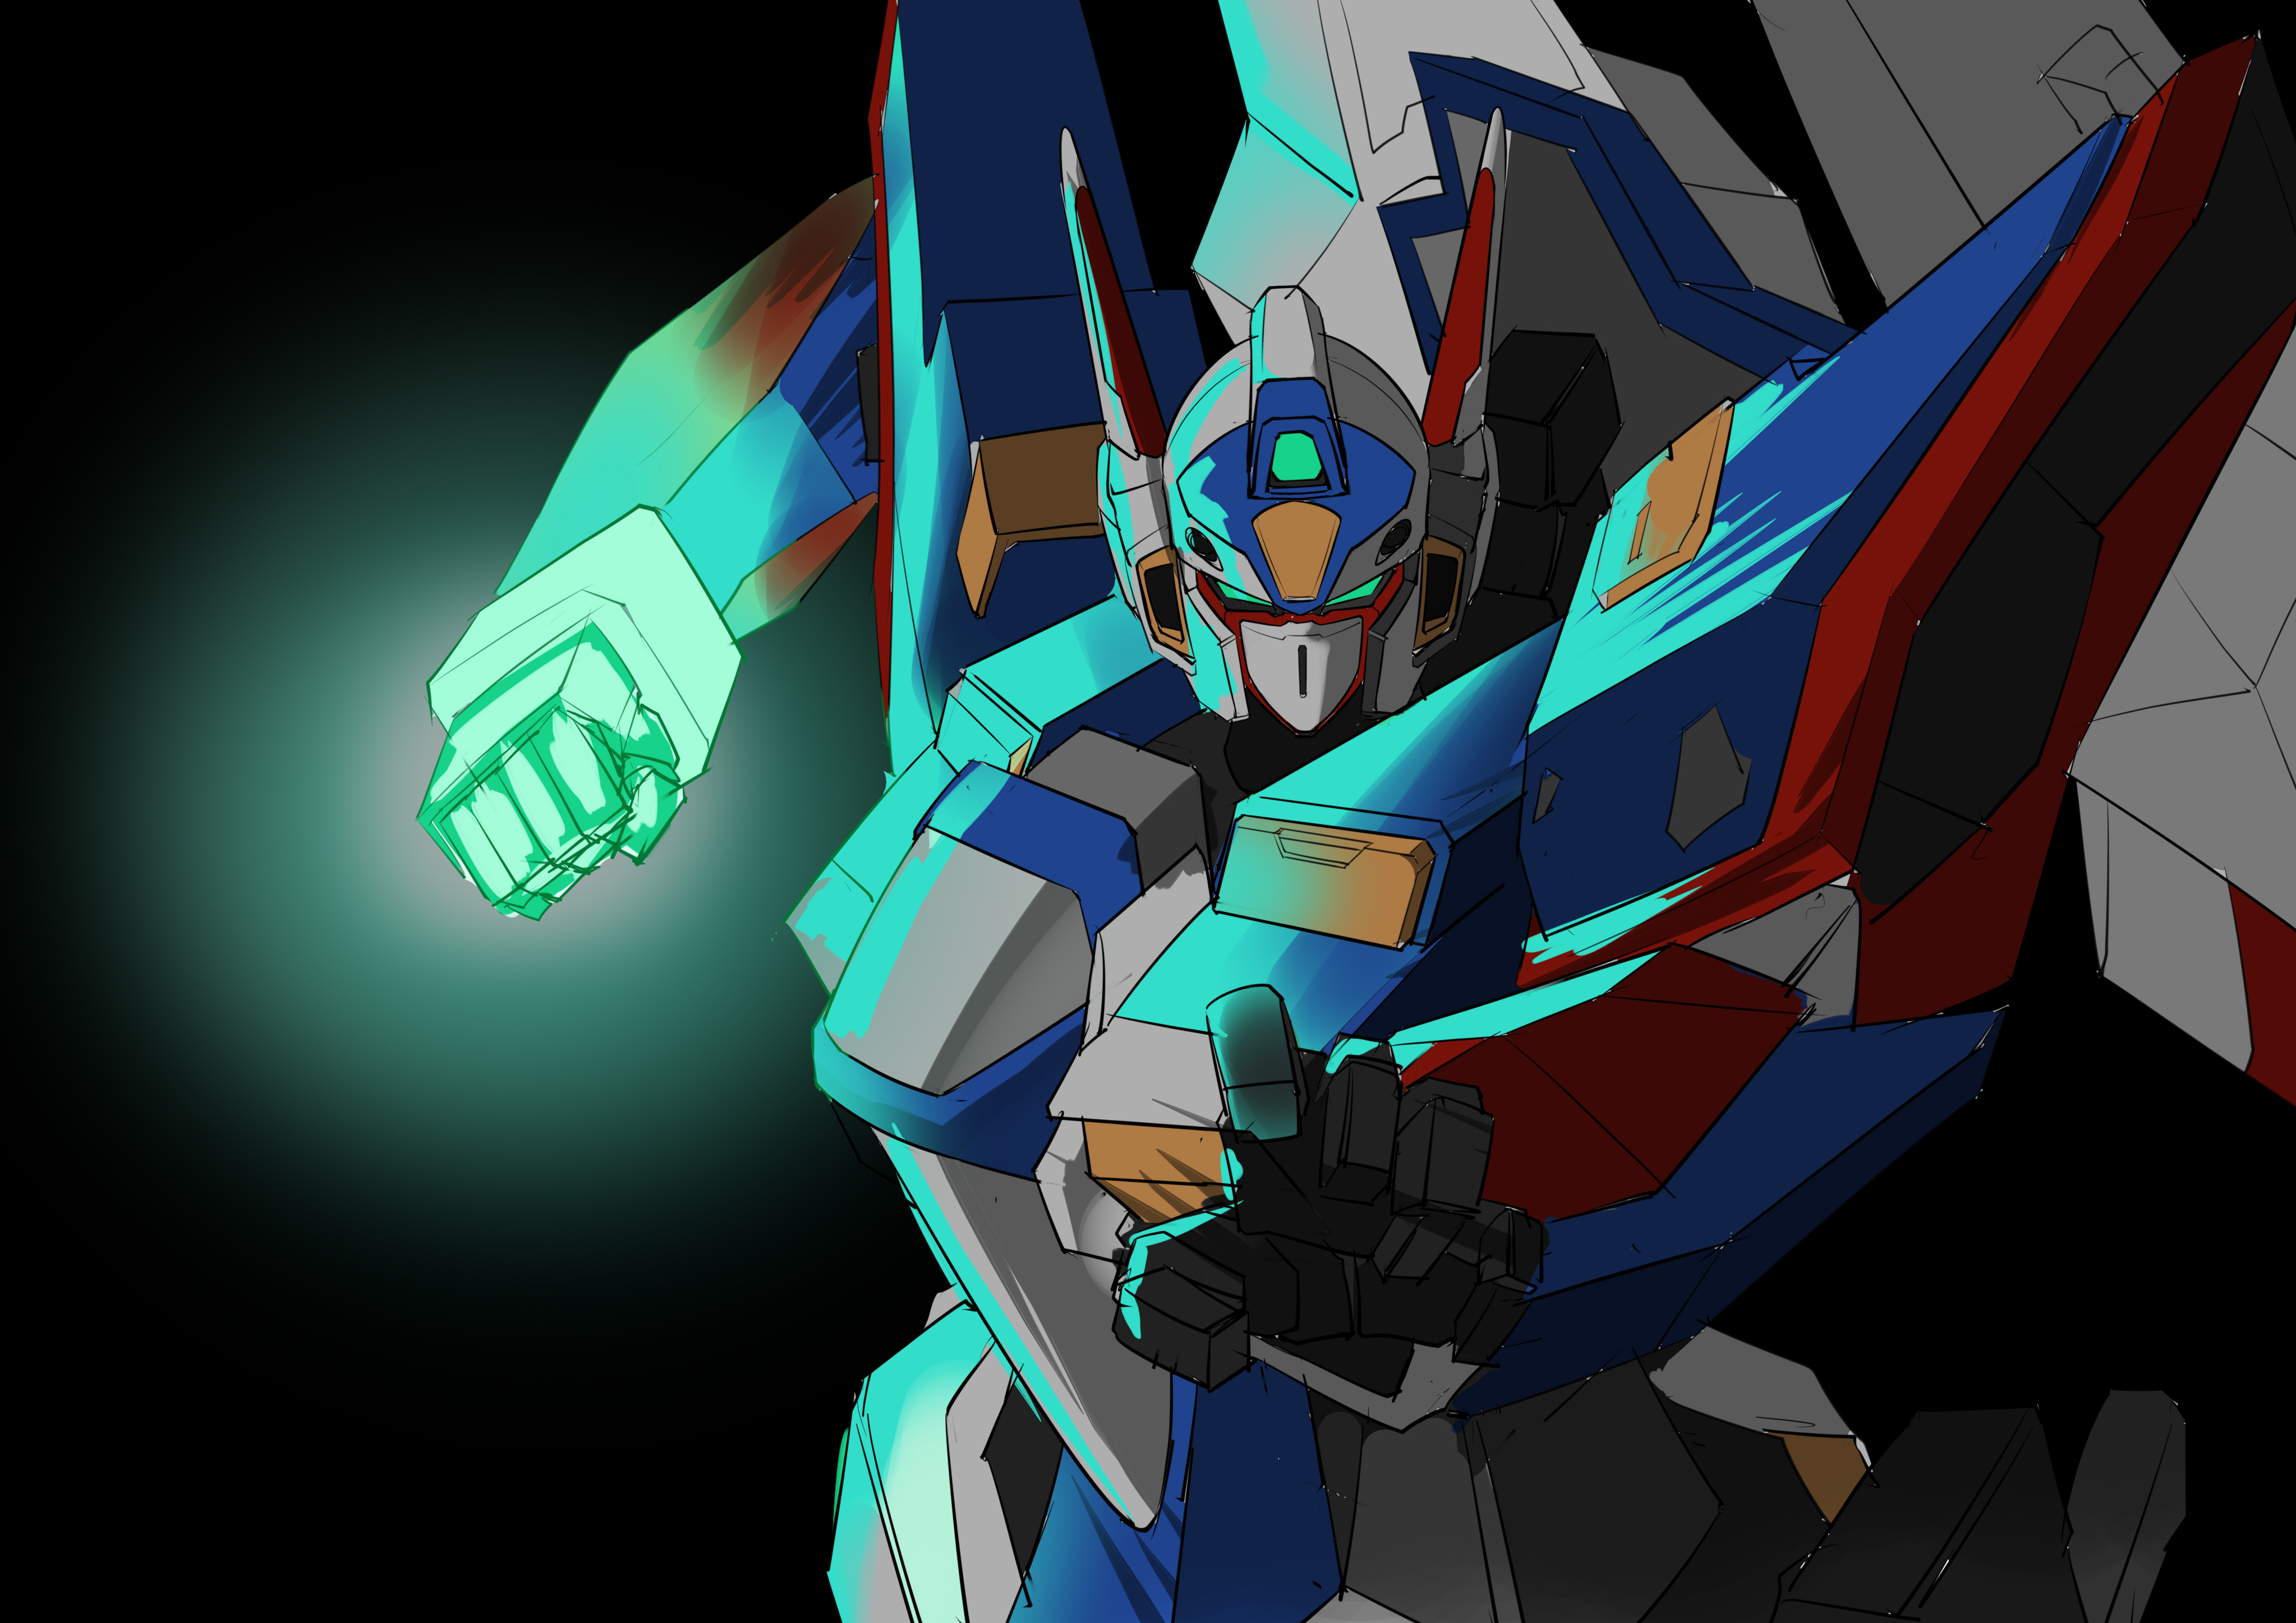 R 1 Anime Mechs Super Robot Wars Artwork Digital Art Fan Art 4093x2894